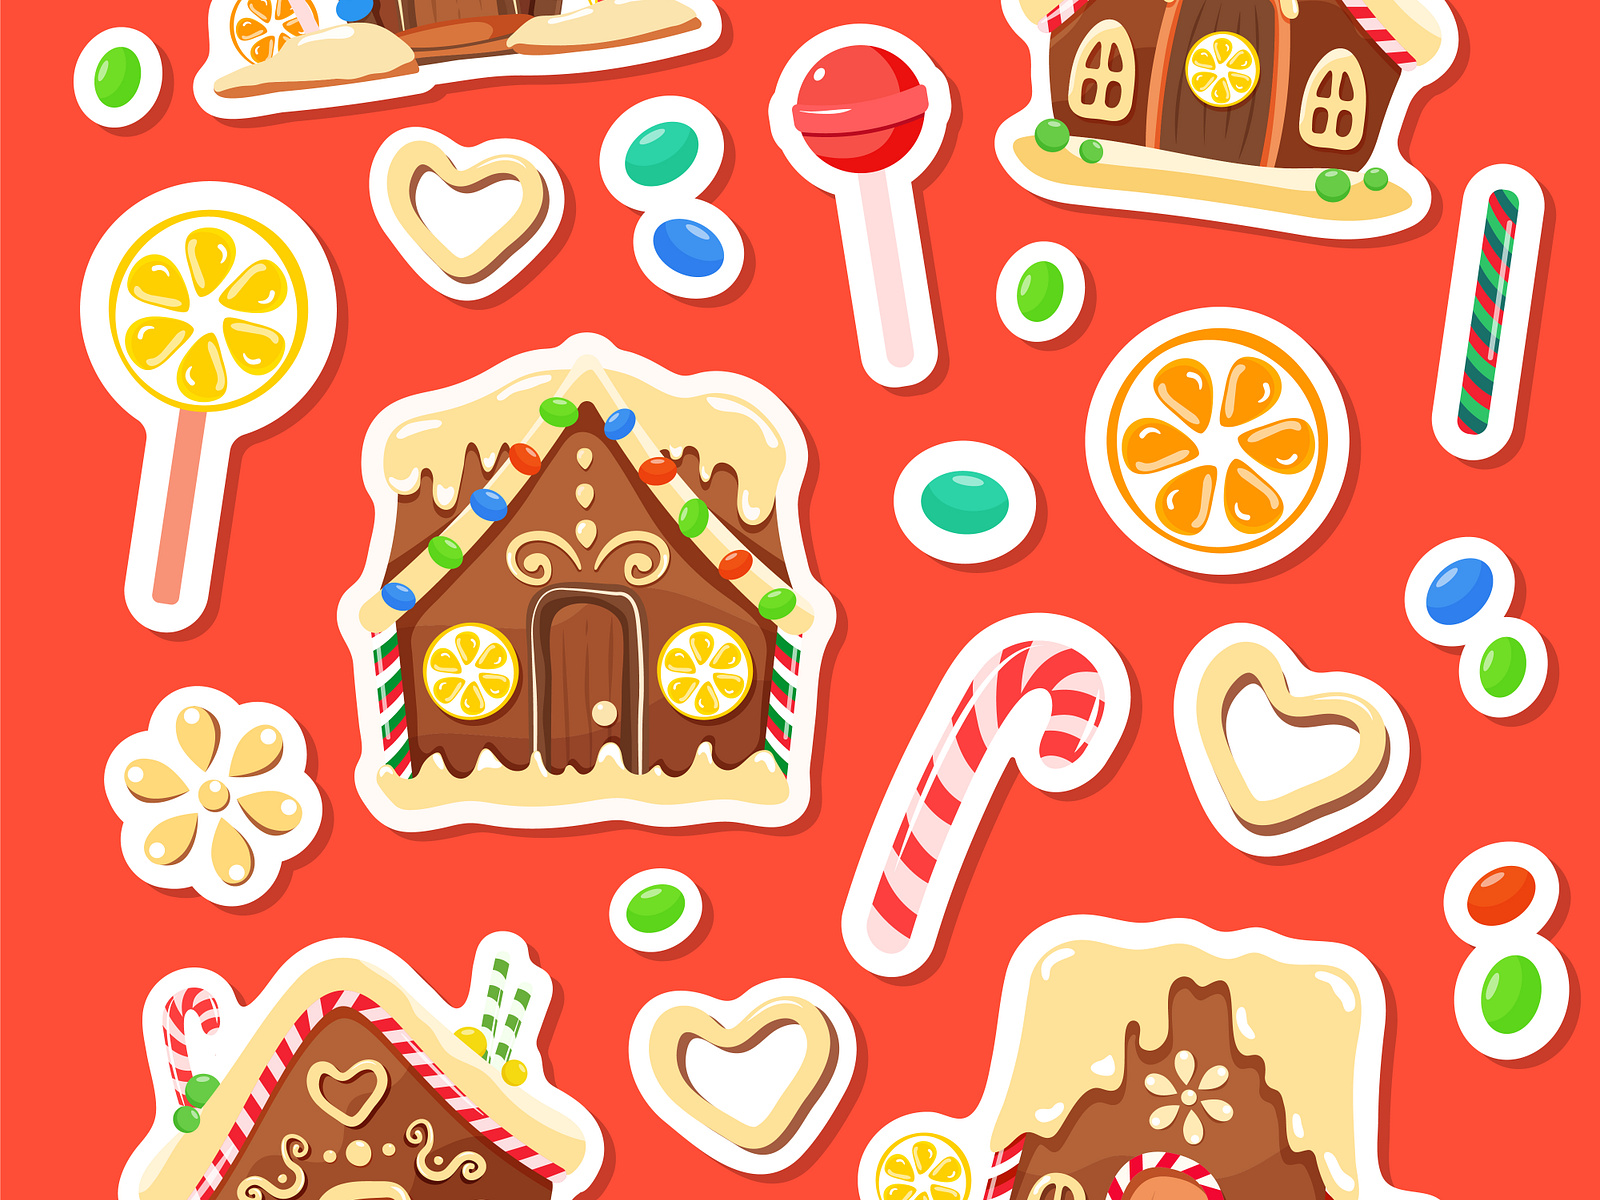 Gingerbread houses sticker set by Natalia Korsh on Dribbble